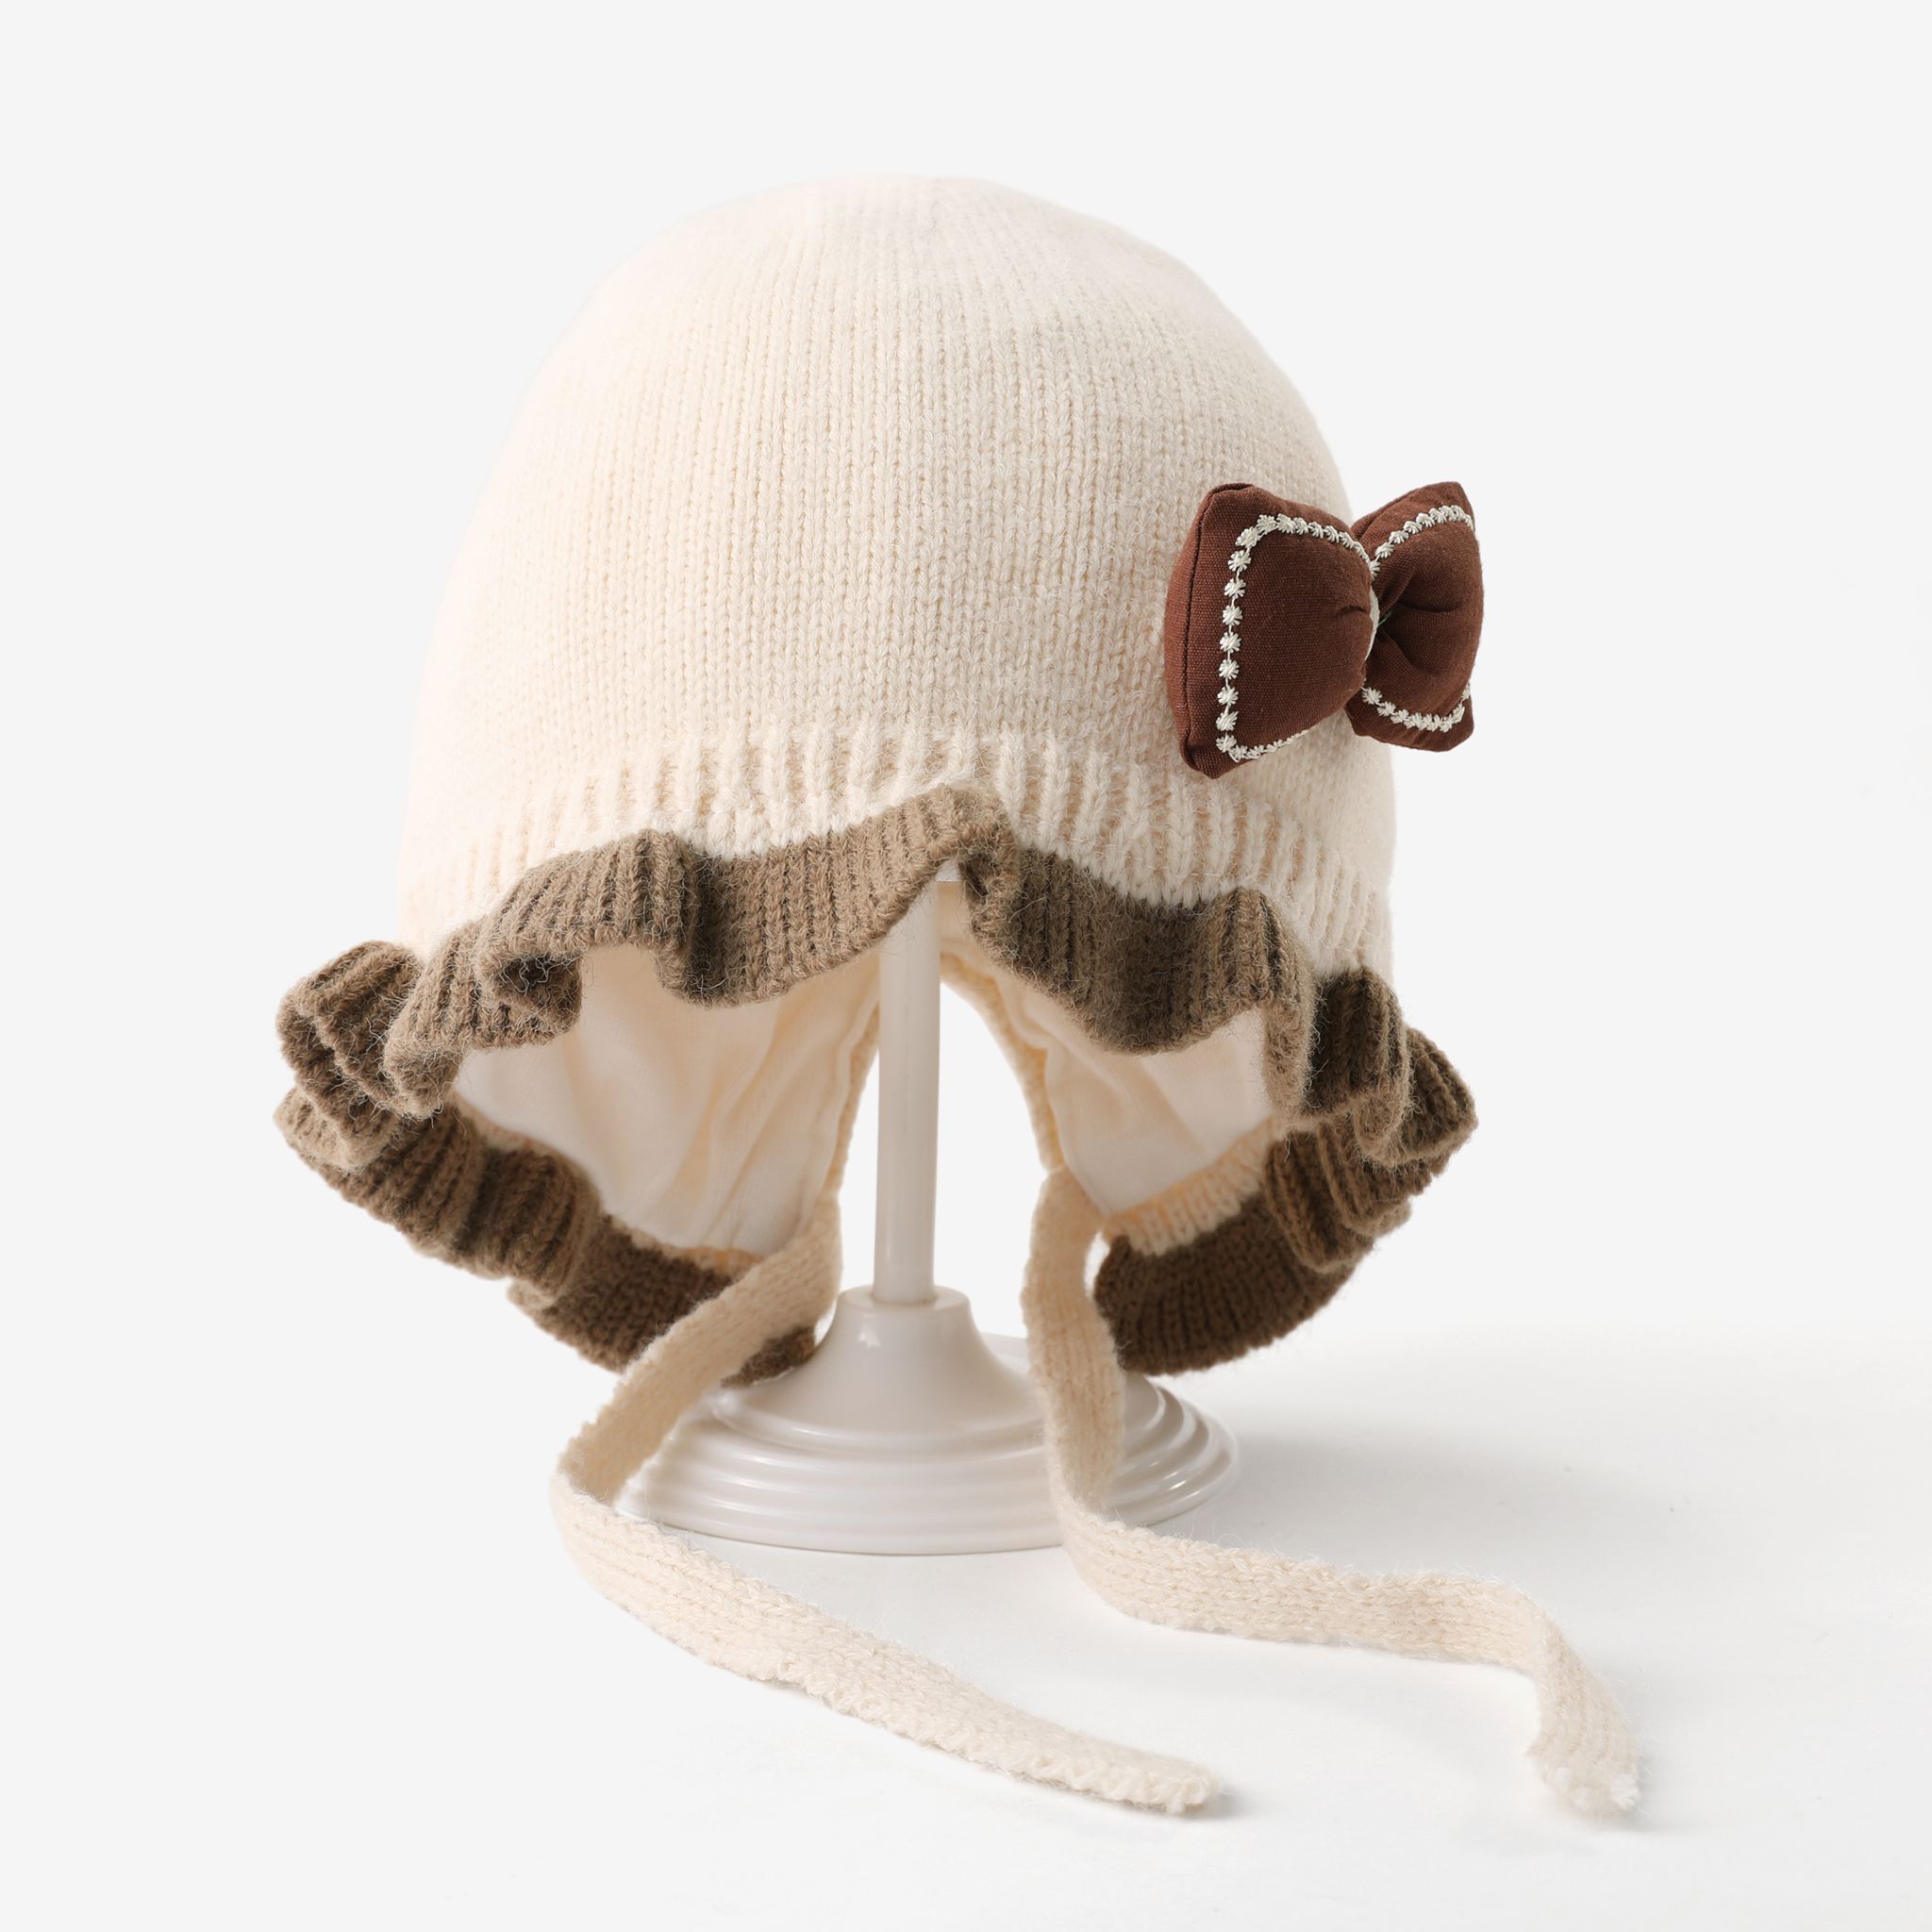 Babyâs Cute Princess Knitted Hat With Bow